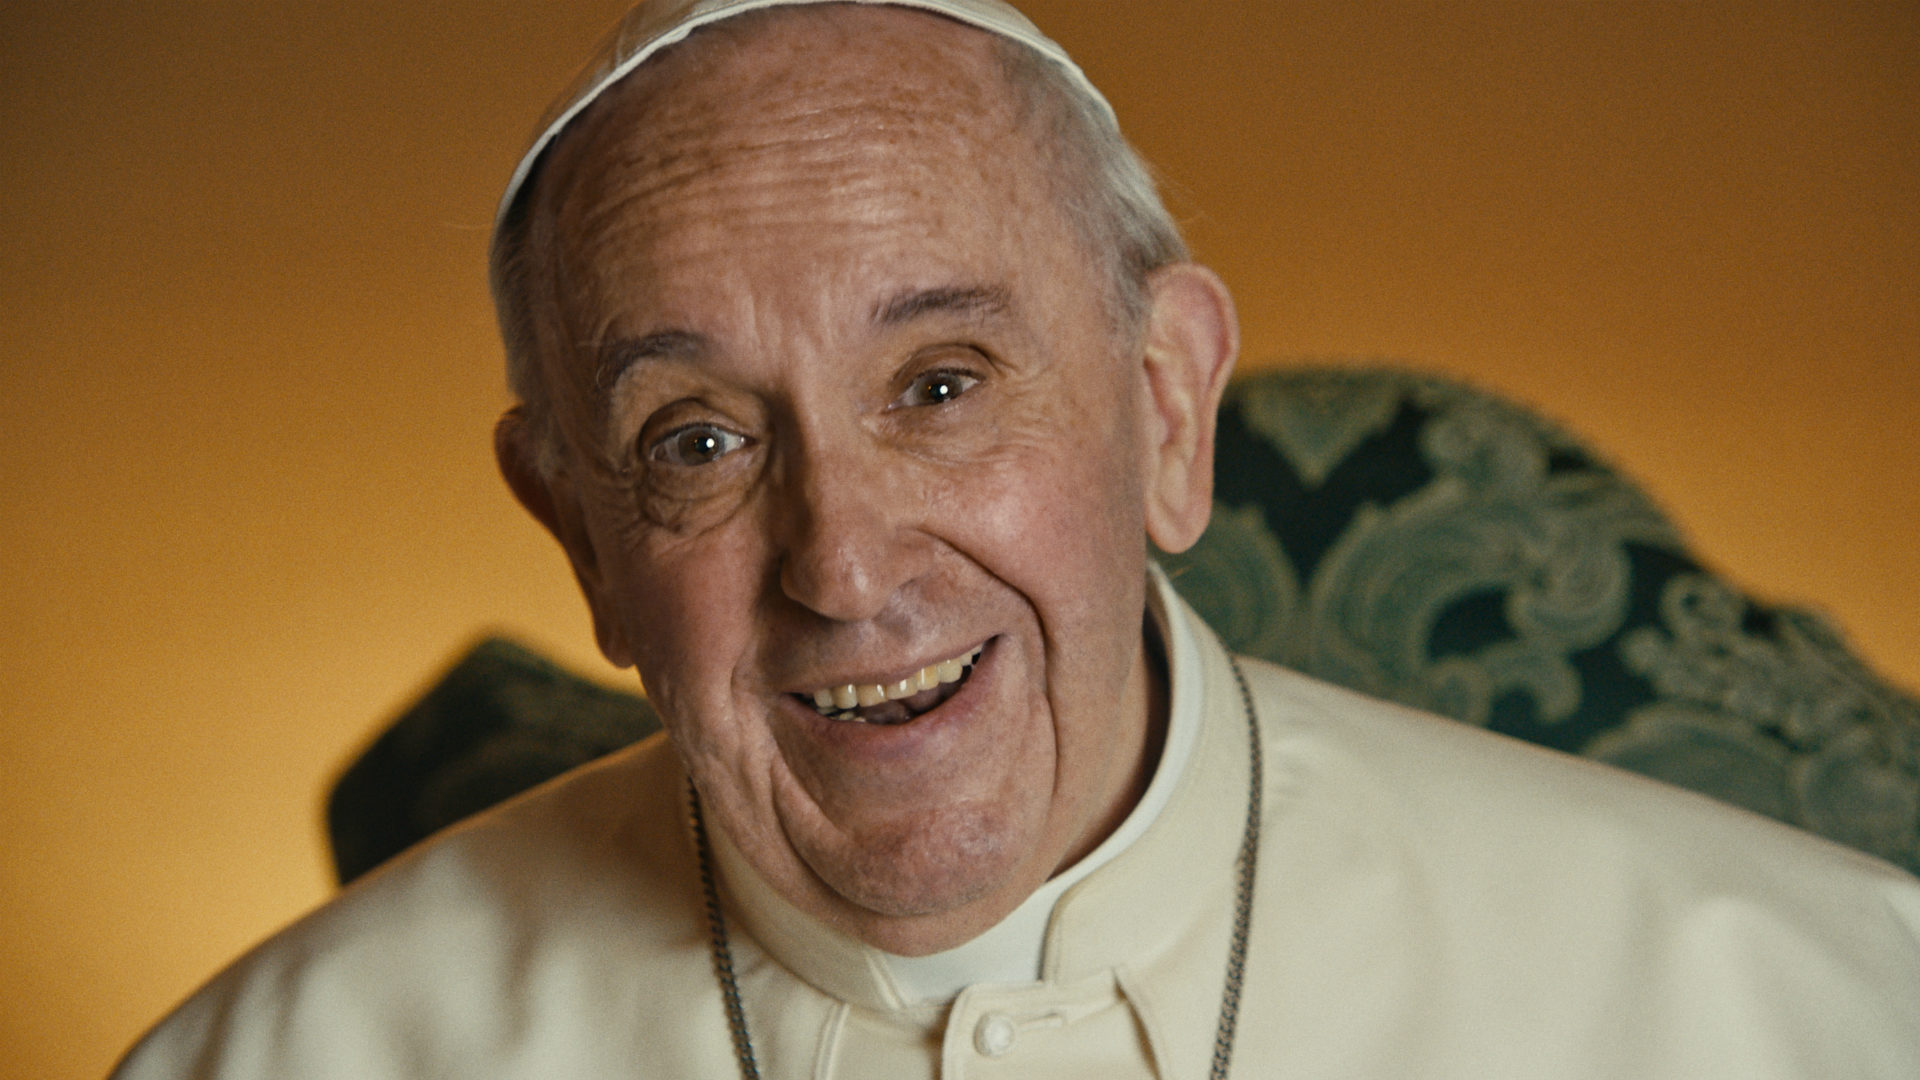 Papst Franziskus im Film von Wim Wenders